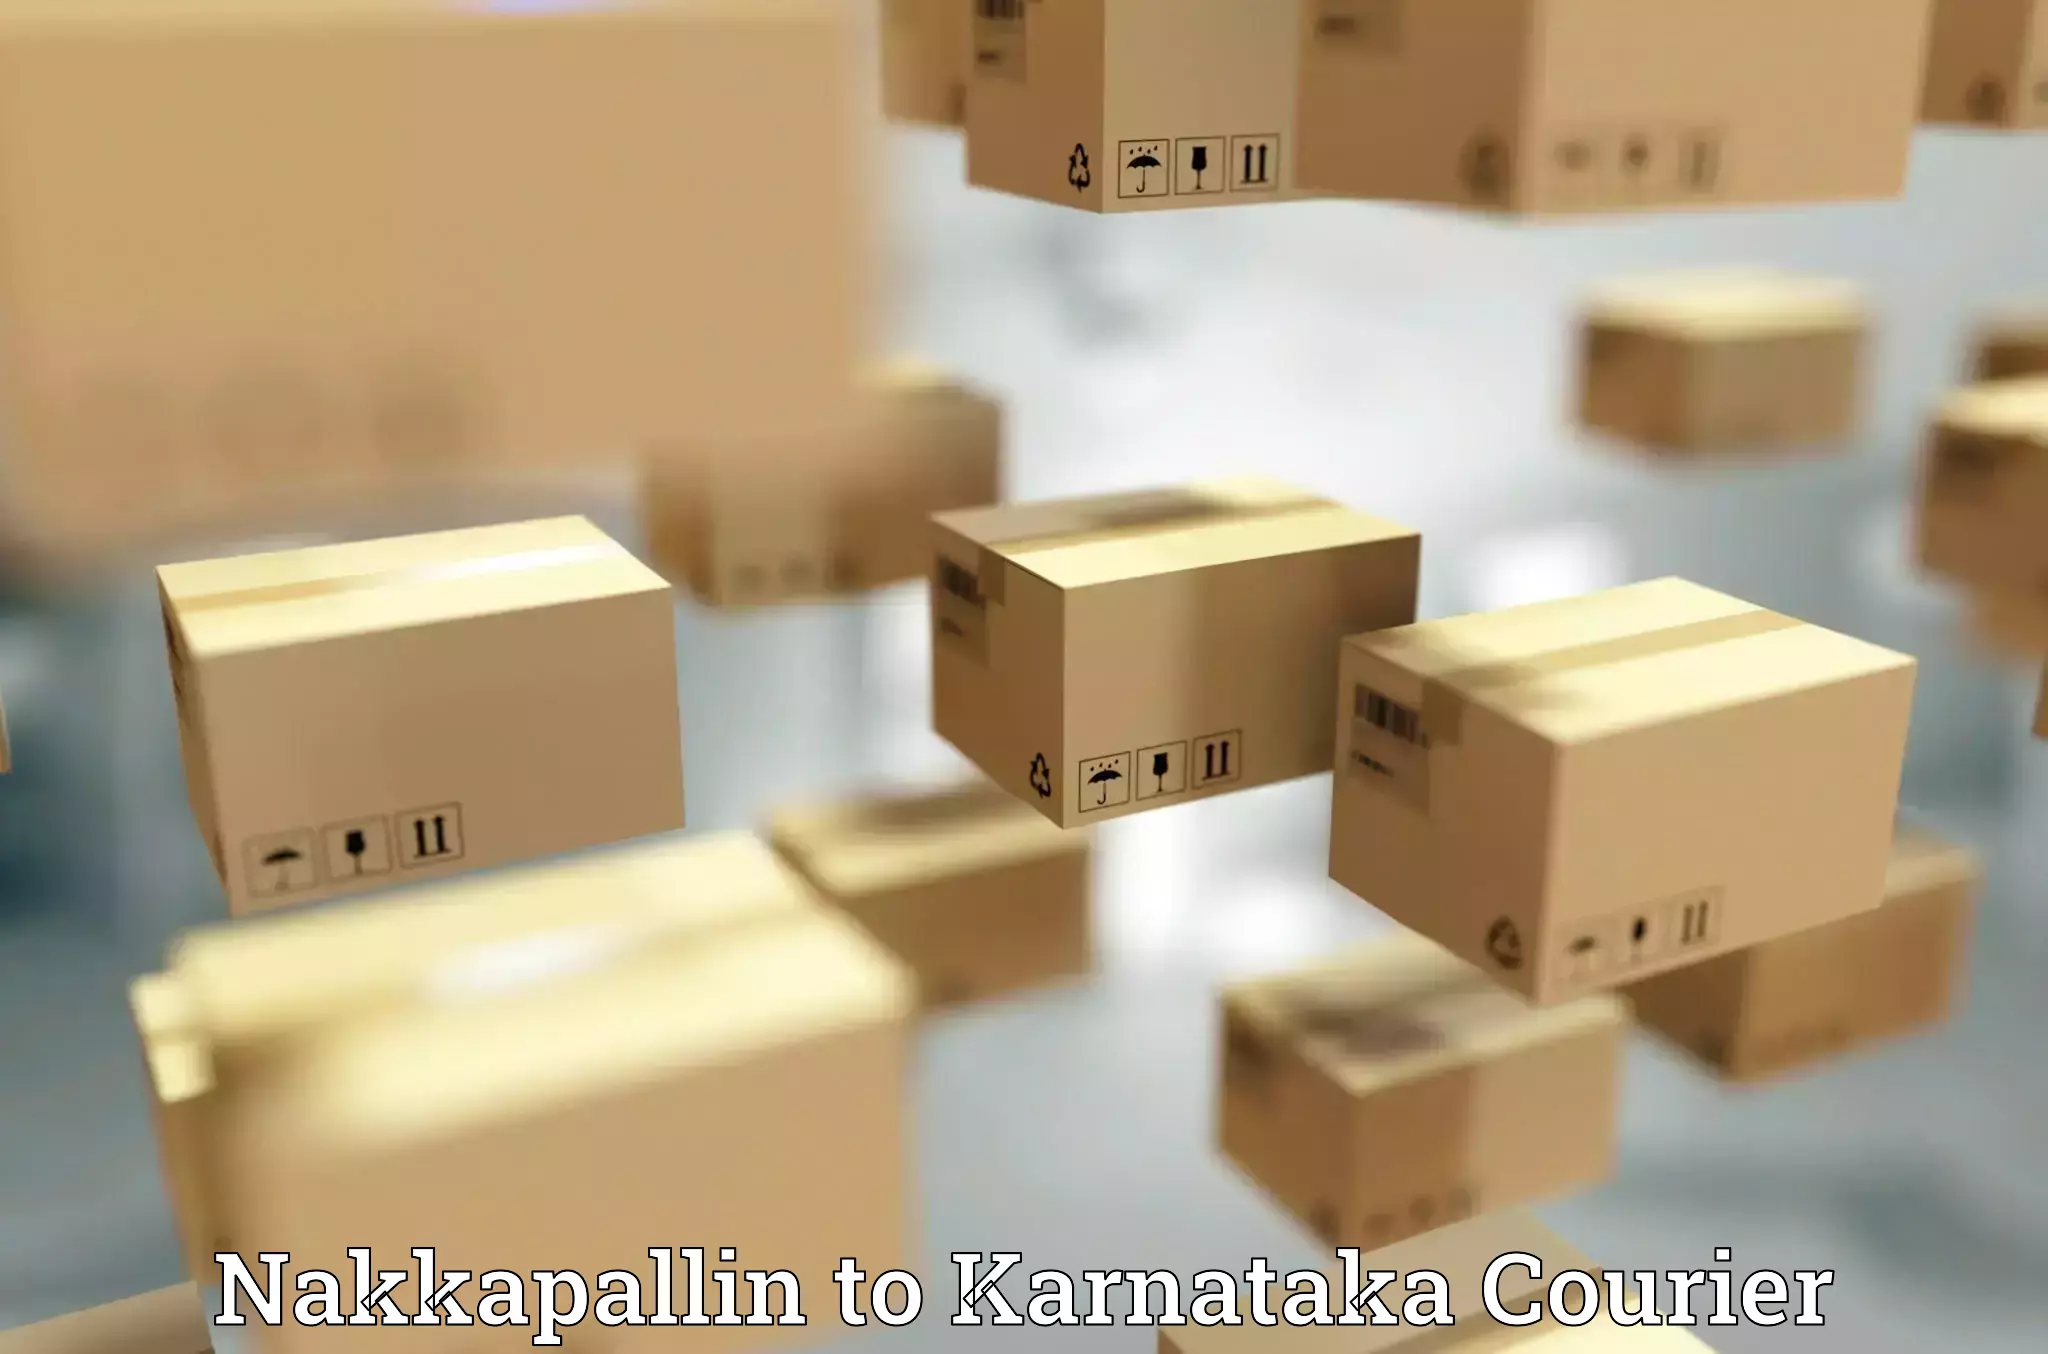 Affordable parcel service Nakkapallin to Bantwal